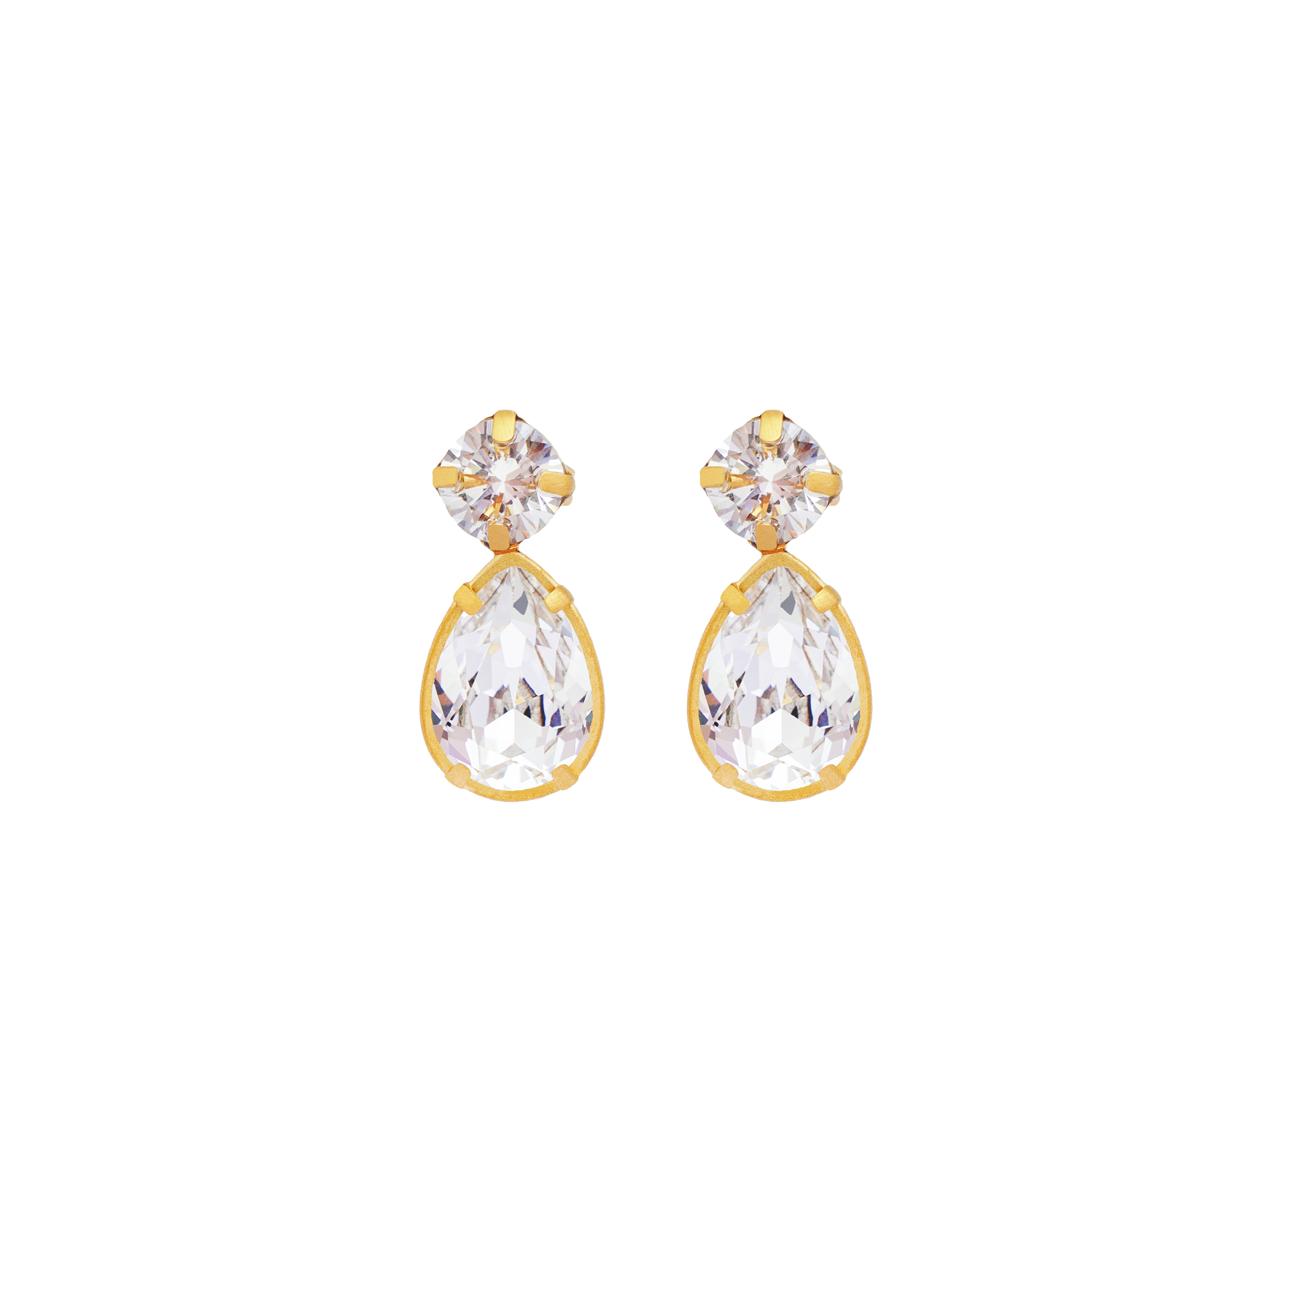 Billie Crystal earrings